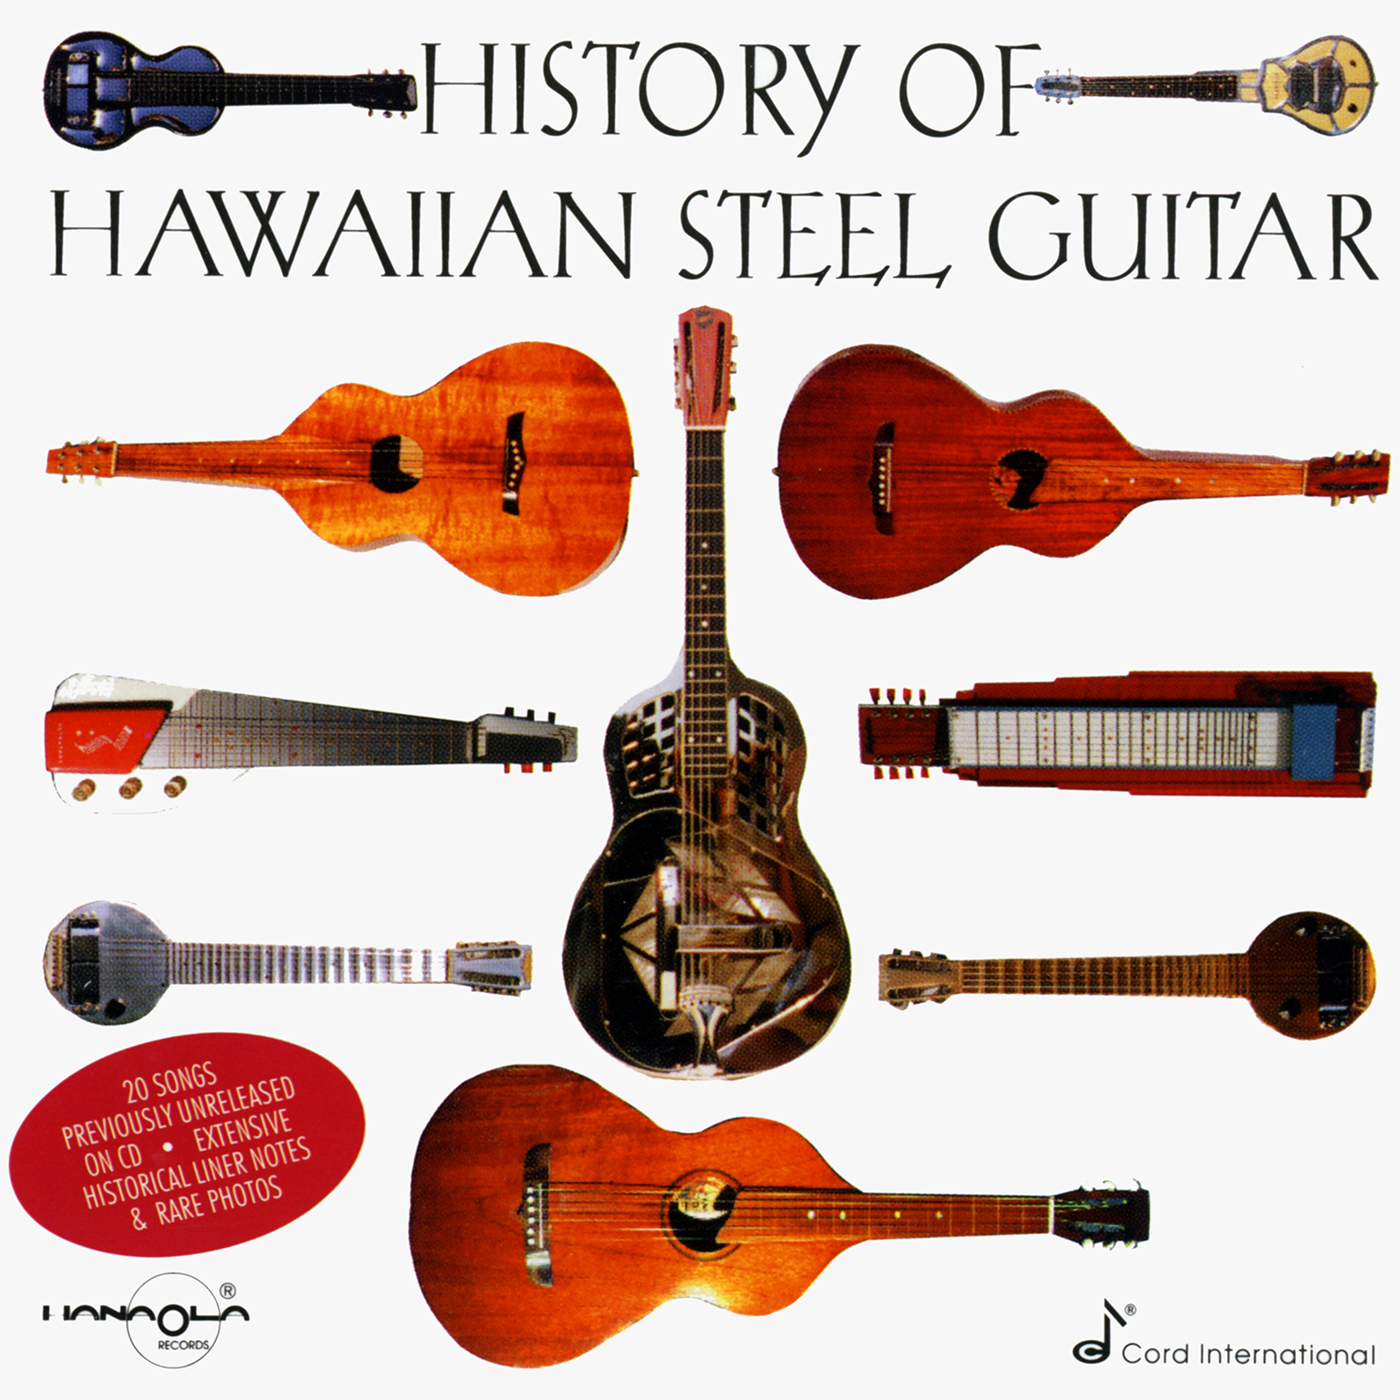 History of Hawaiia Steel Guitar